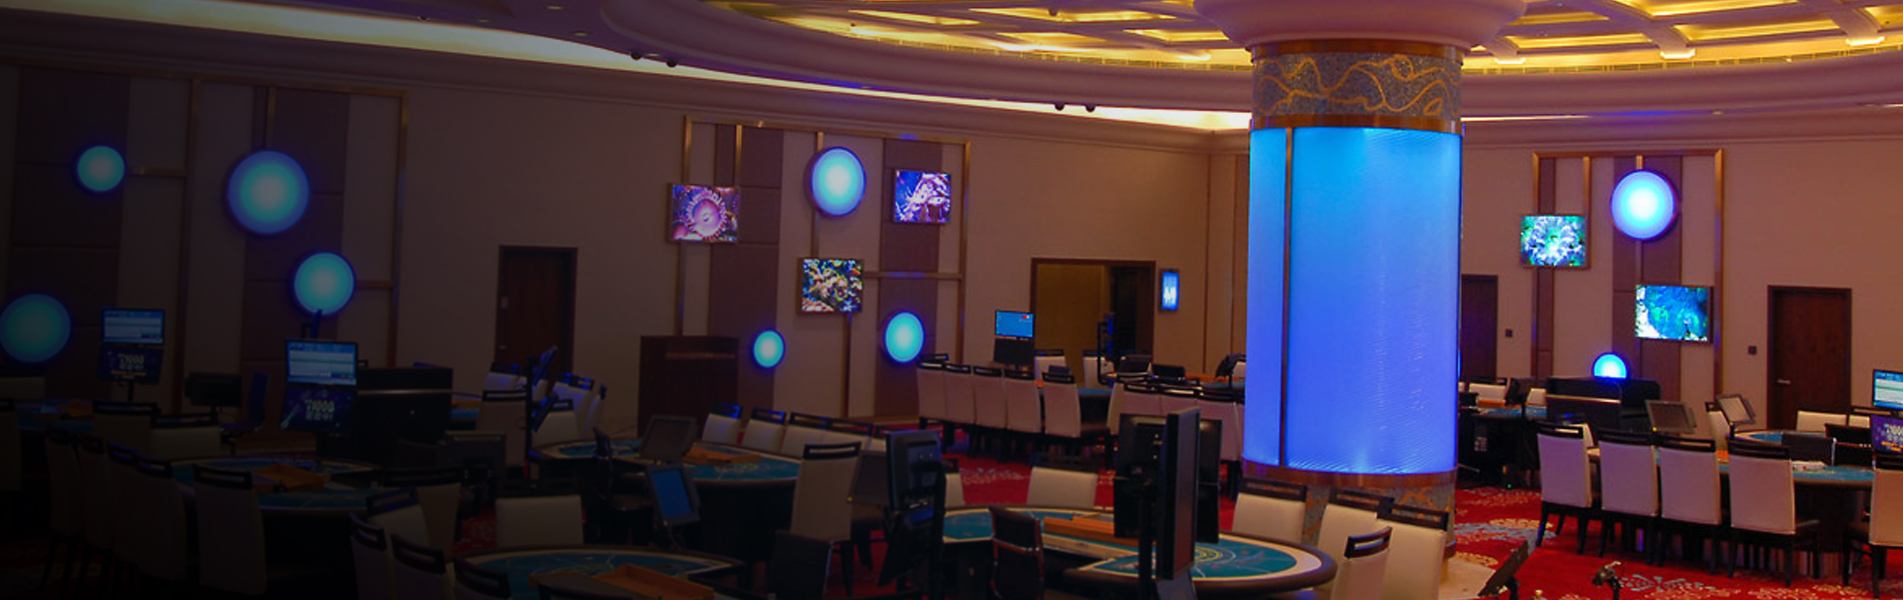 Casino Oceanus Casino Macau 2